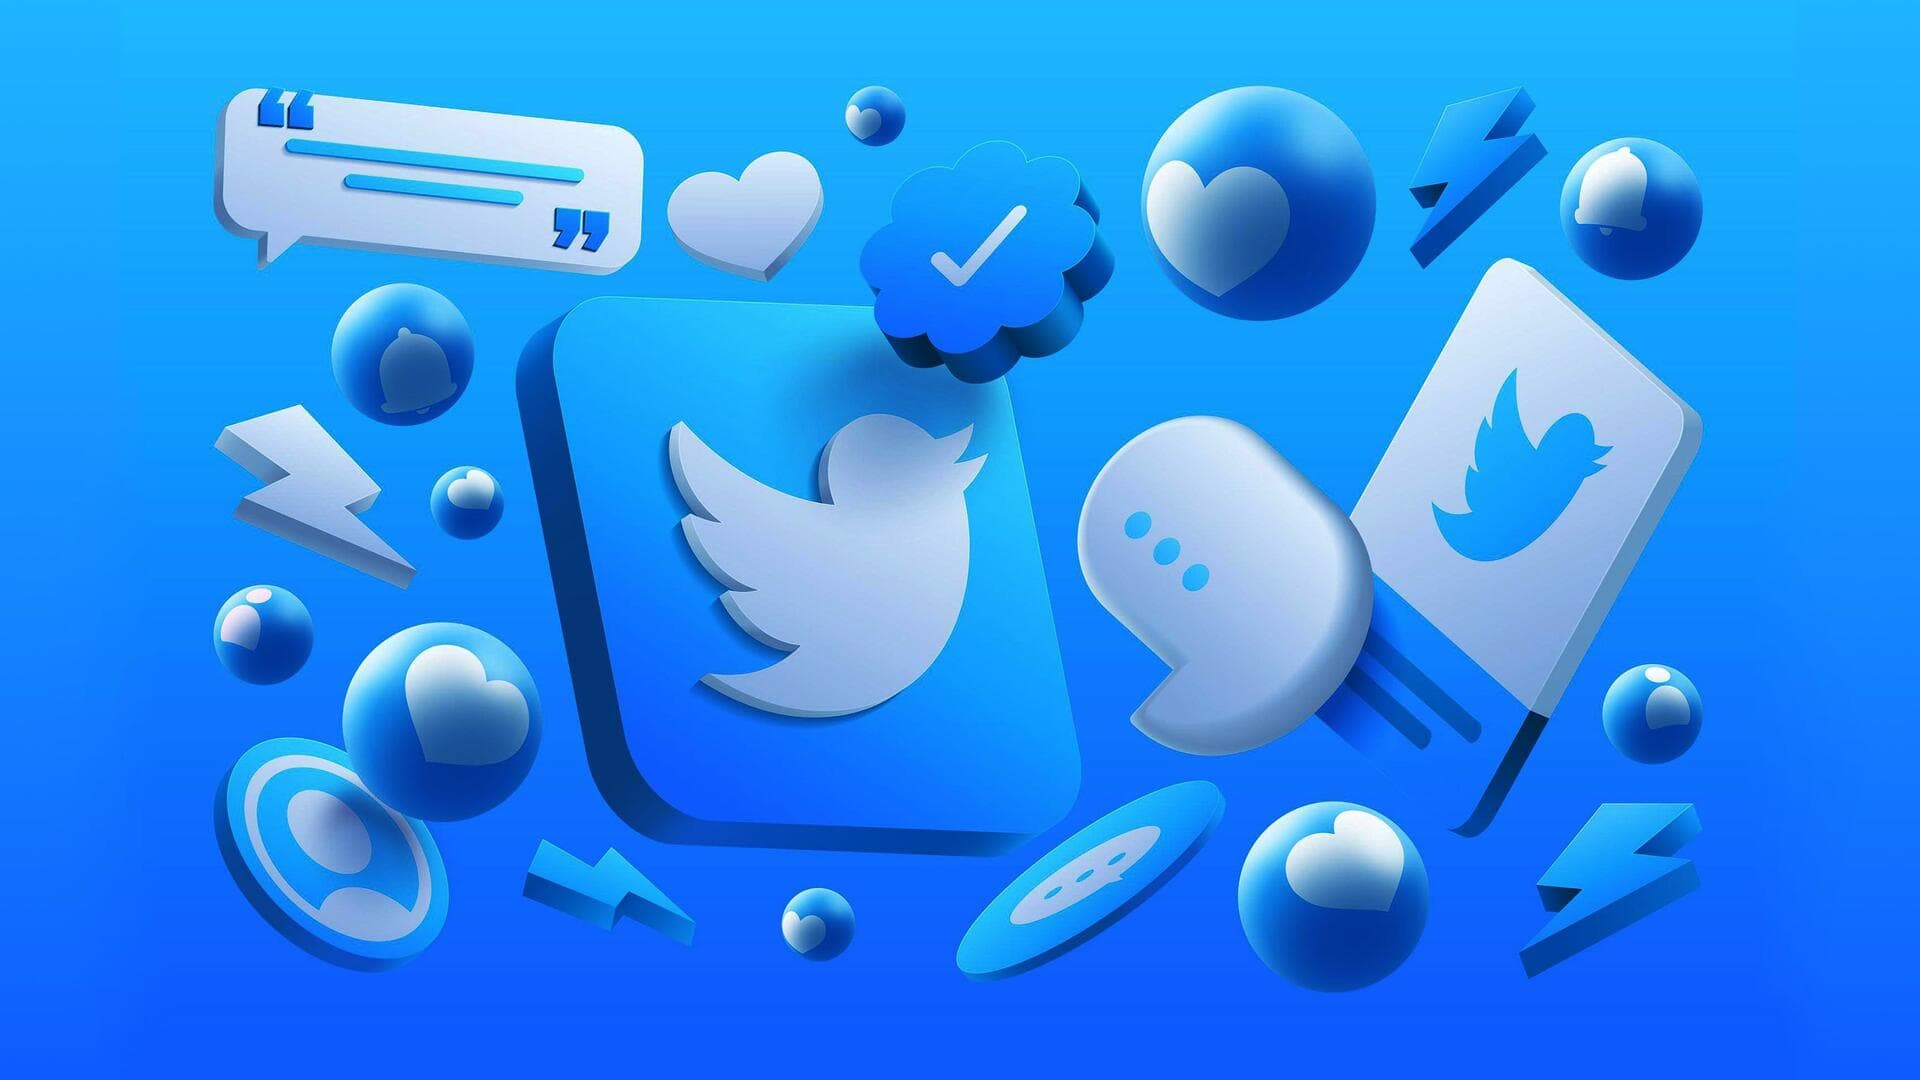 ट्विटर ब्लू सब्सक्रिप्शन में आधे सब्सक्राइबर्स के 1,000 से कम हैं फॉलोअर्स- रिपोर्ट